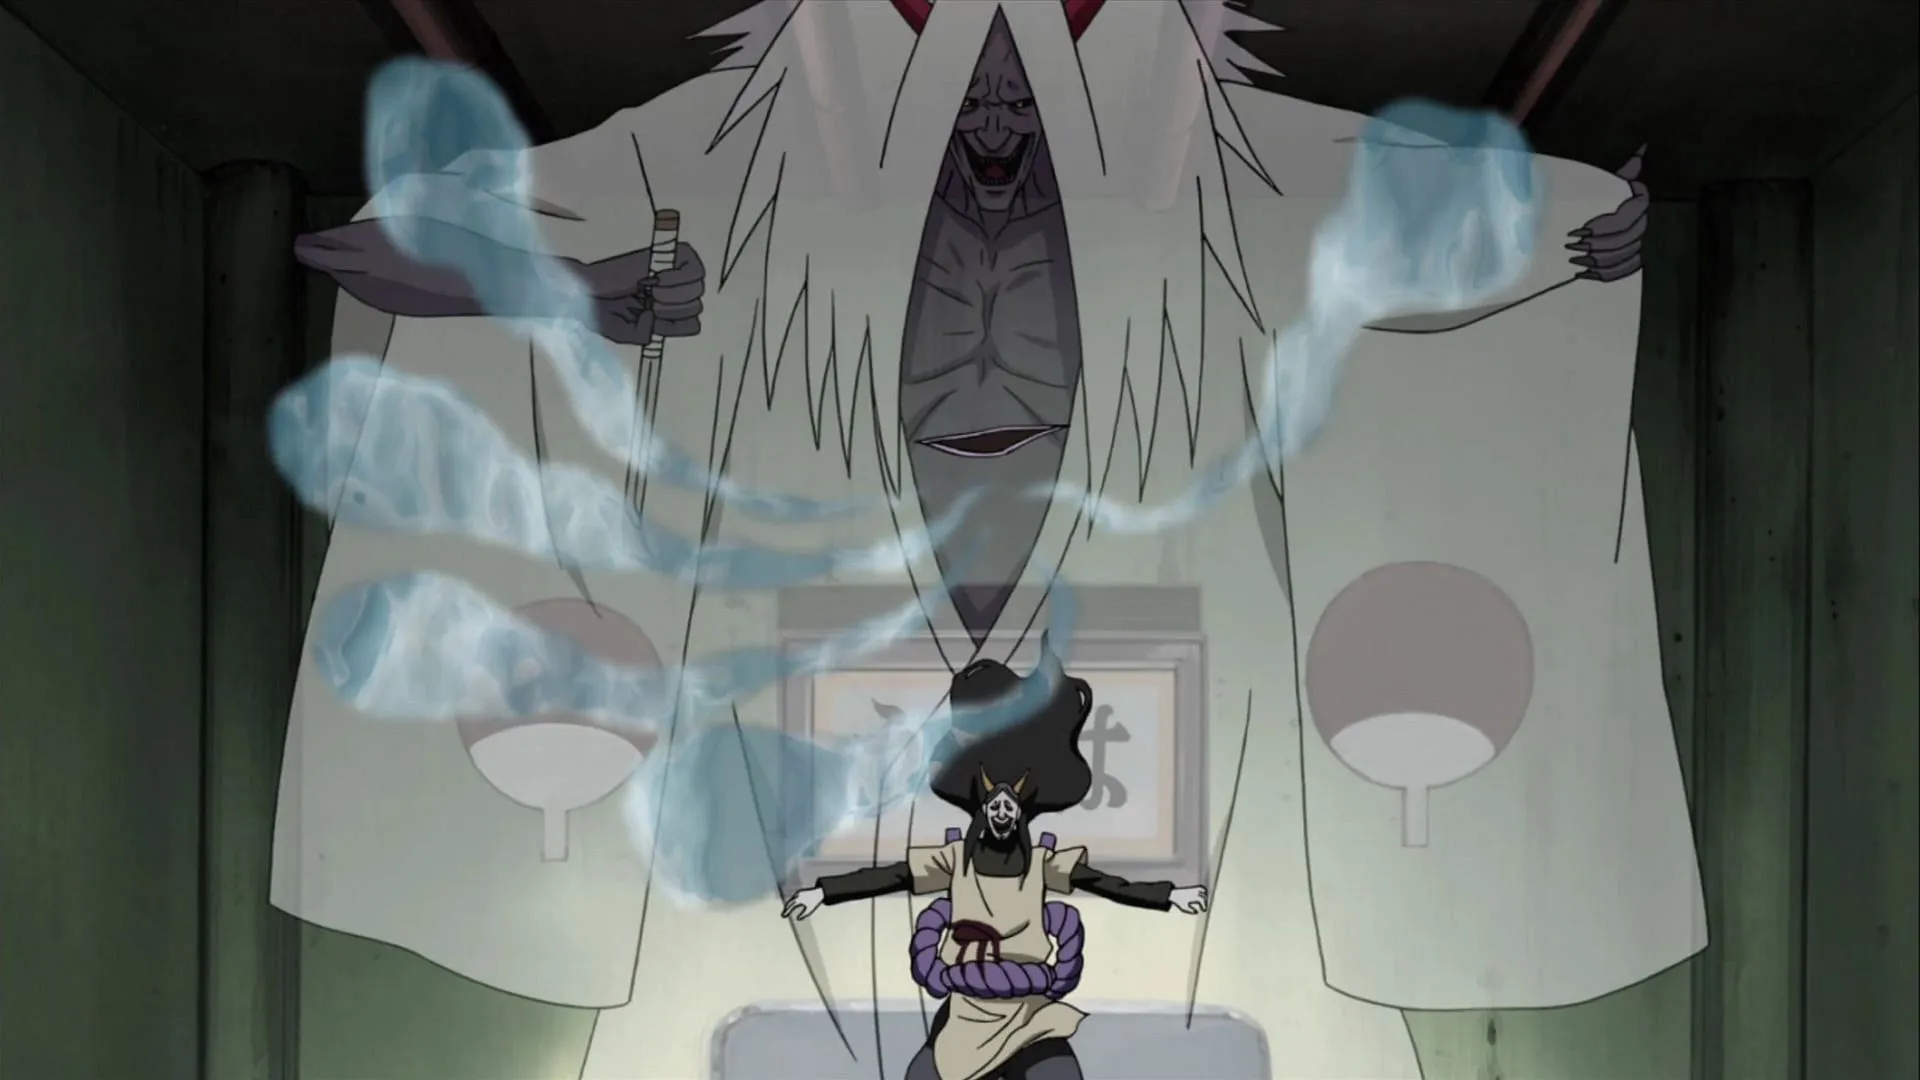 Orochimaru libera le anime intrappolate come visto in Naruto Shippuden (Immagine tramite Studio Pierrot)